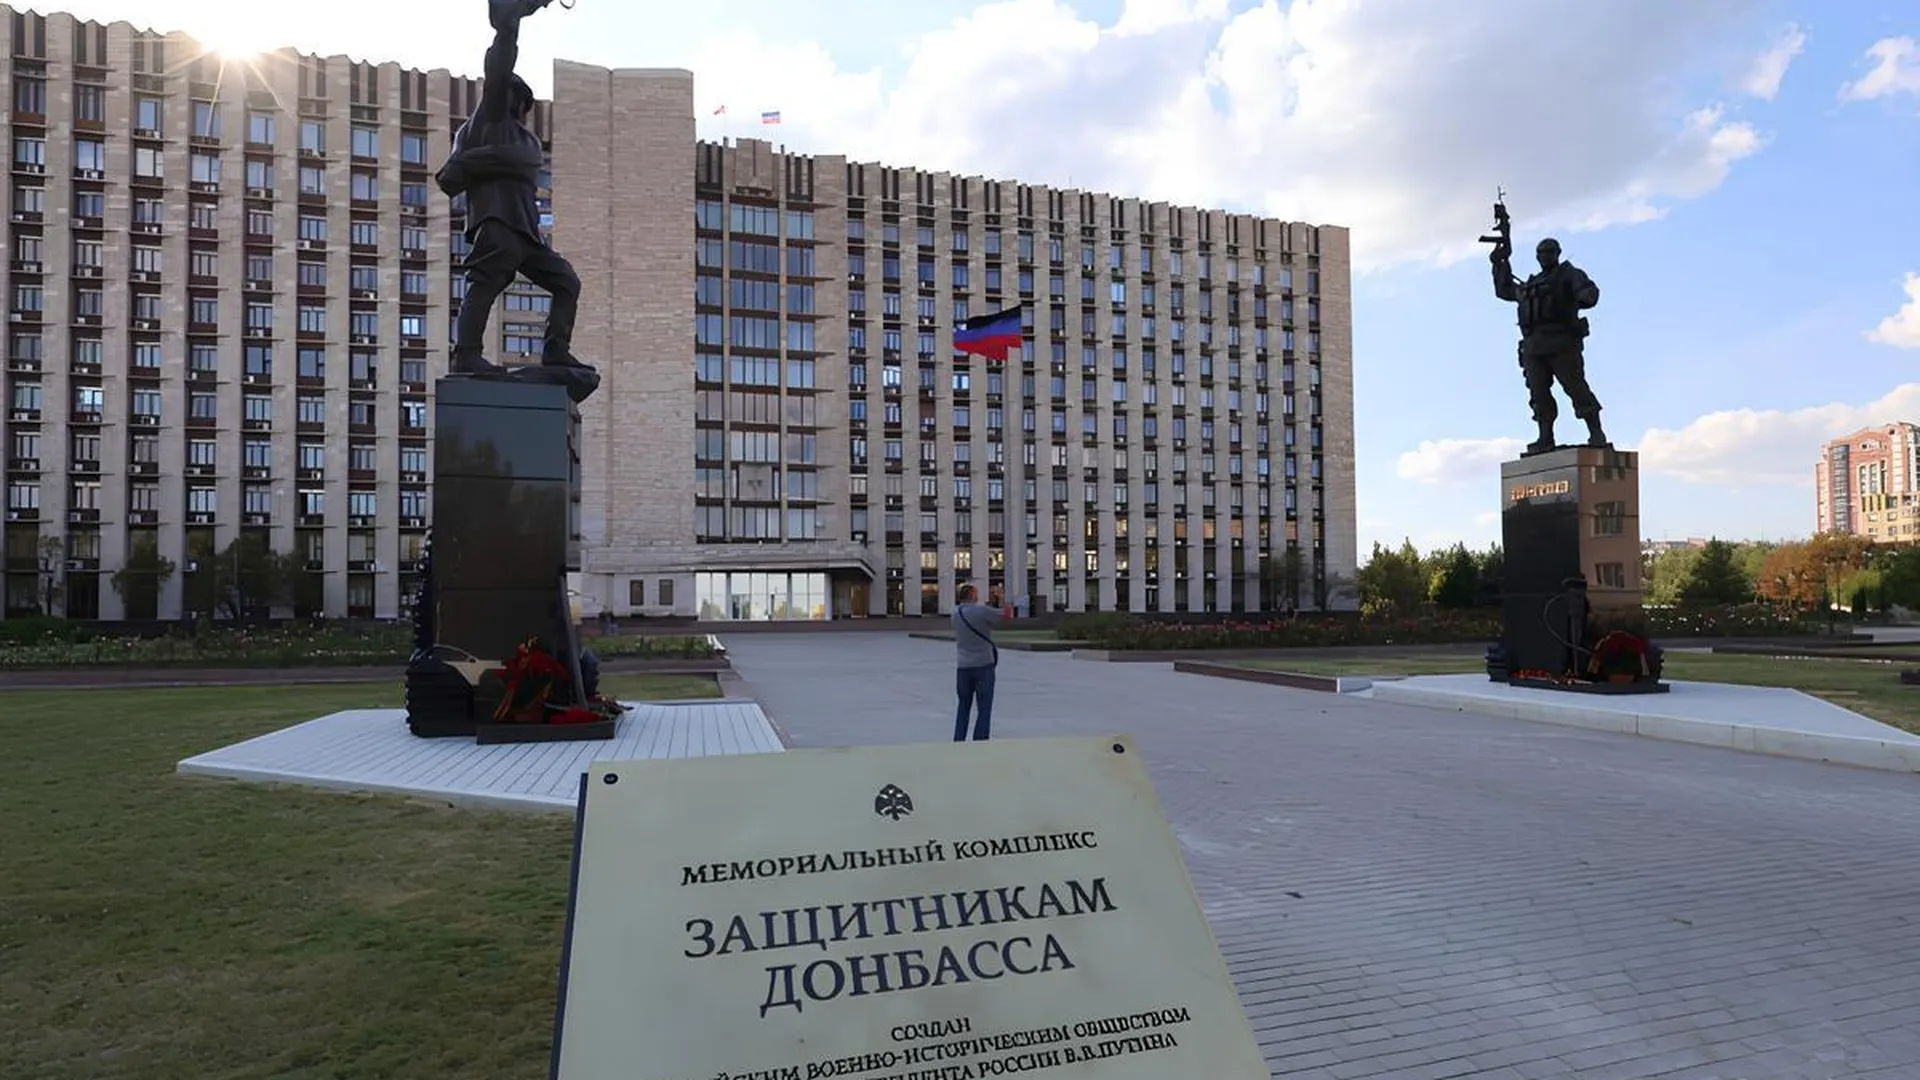 Мемориал защитникам Донбасса накануне 80-летия освобождения региона от фашистов установили на площади перед Домом правительства ДНР в Донецке